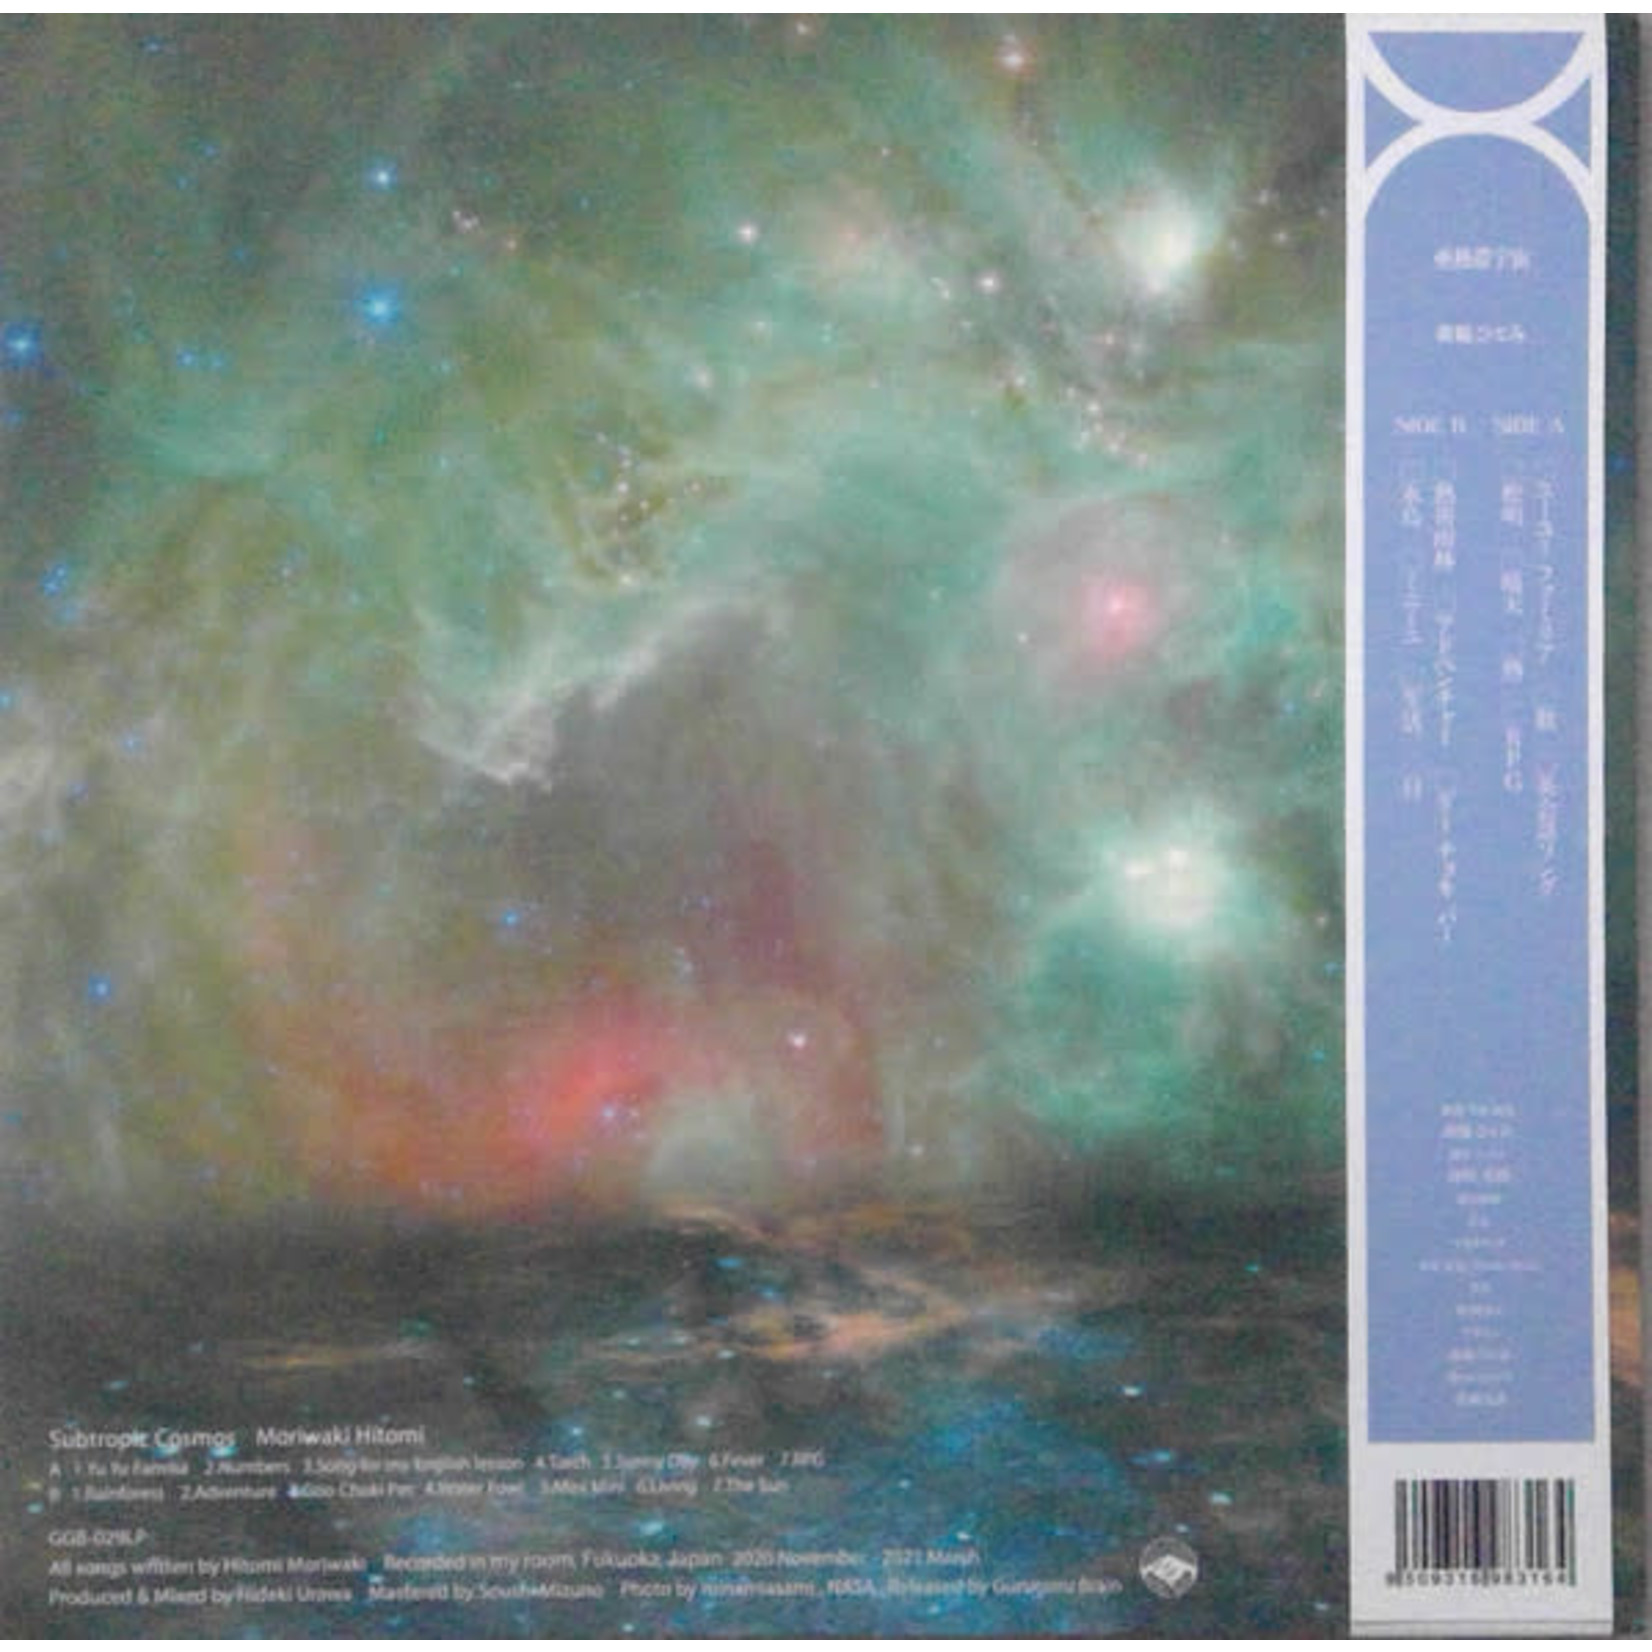 Moriwaki Hitomi - Subtropic Cosmos (LP)